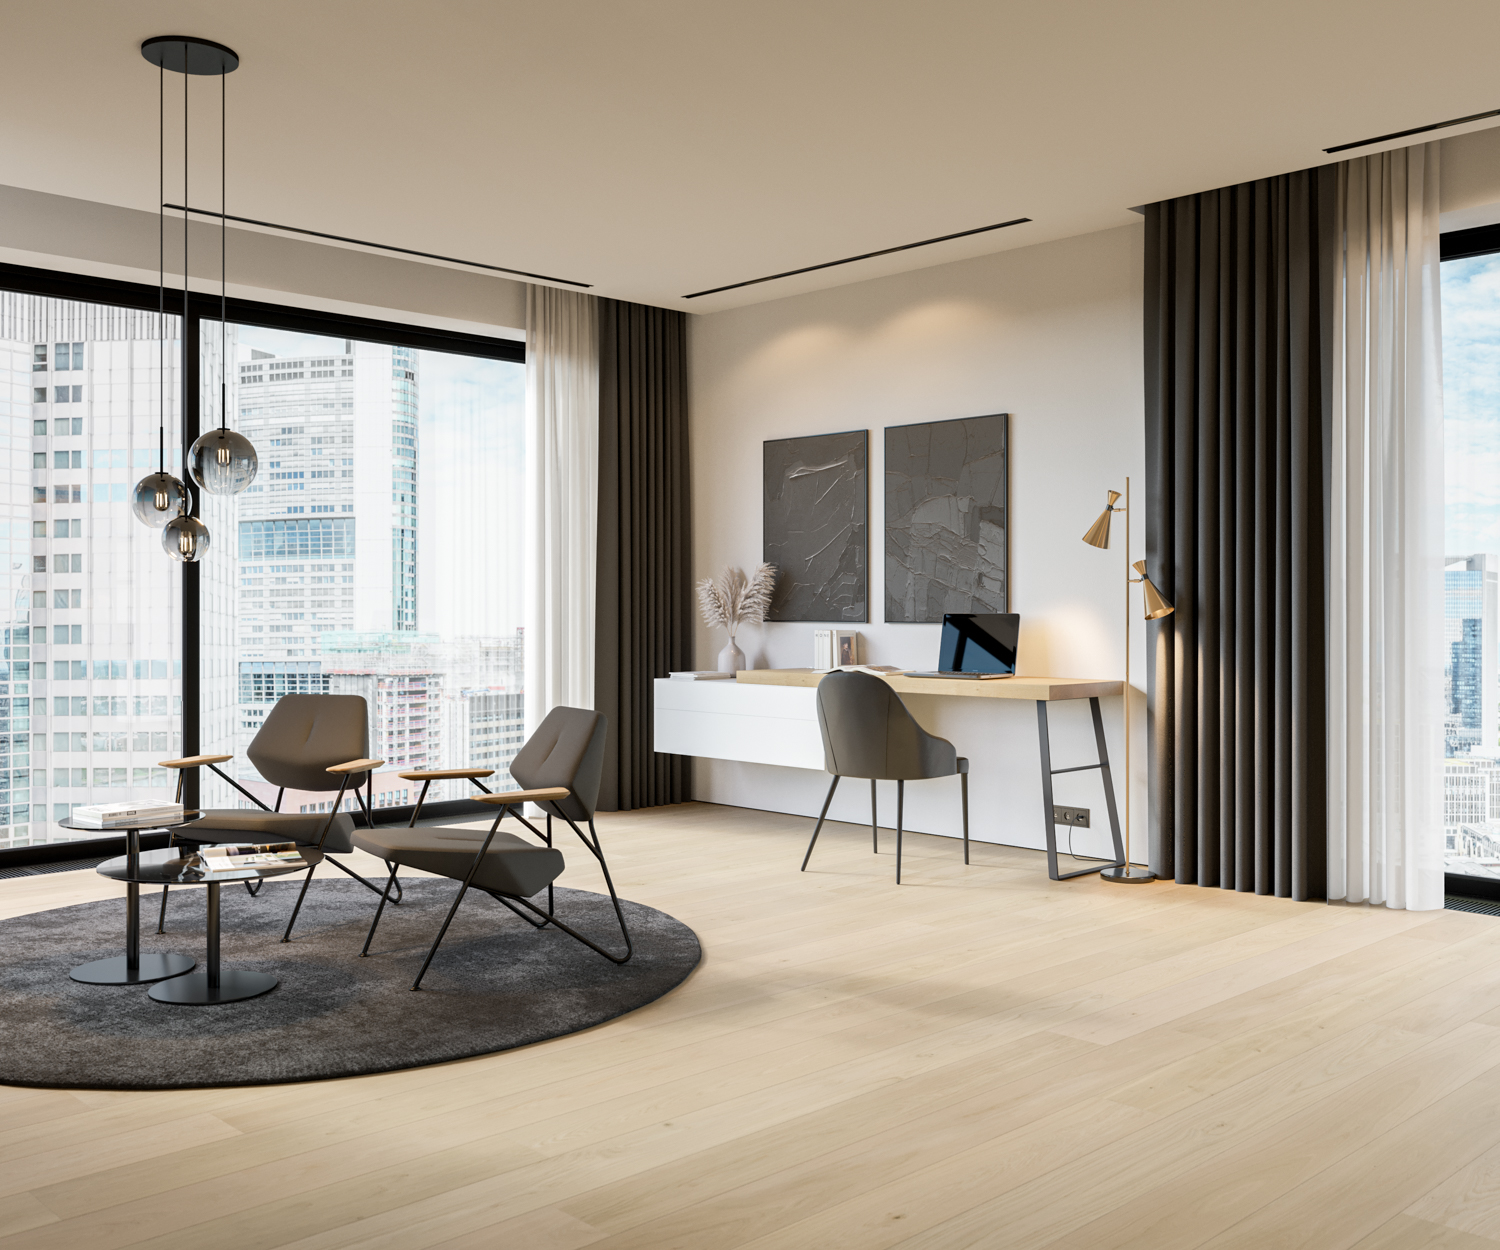 Luxurioeses Appartement mit modernem Schreibtisch kommode und Sitzgruppe mit polstersesseln bequem